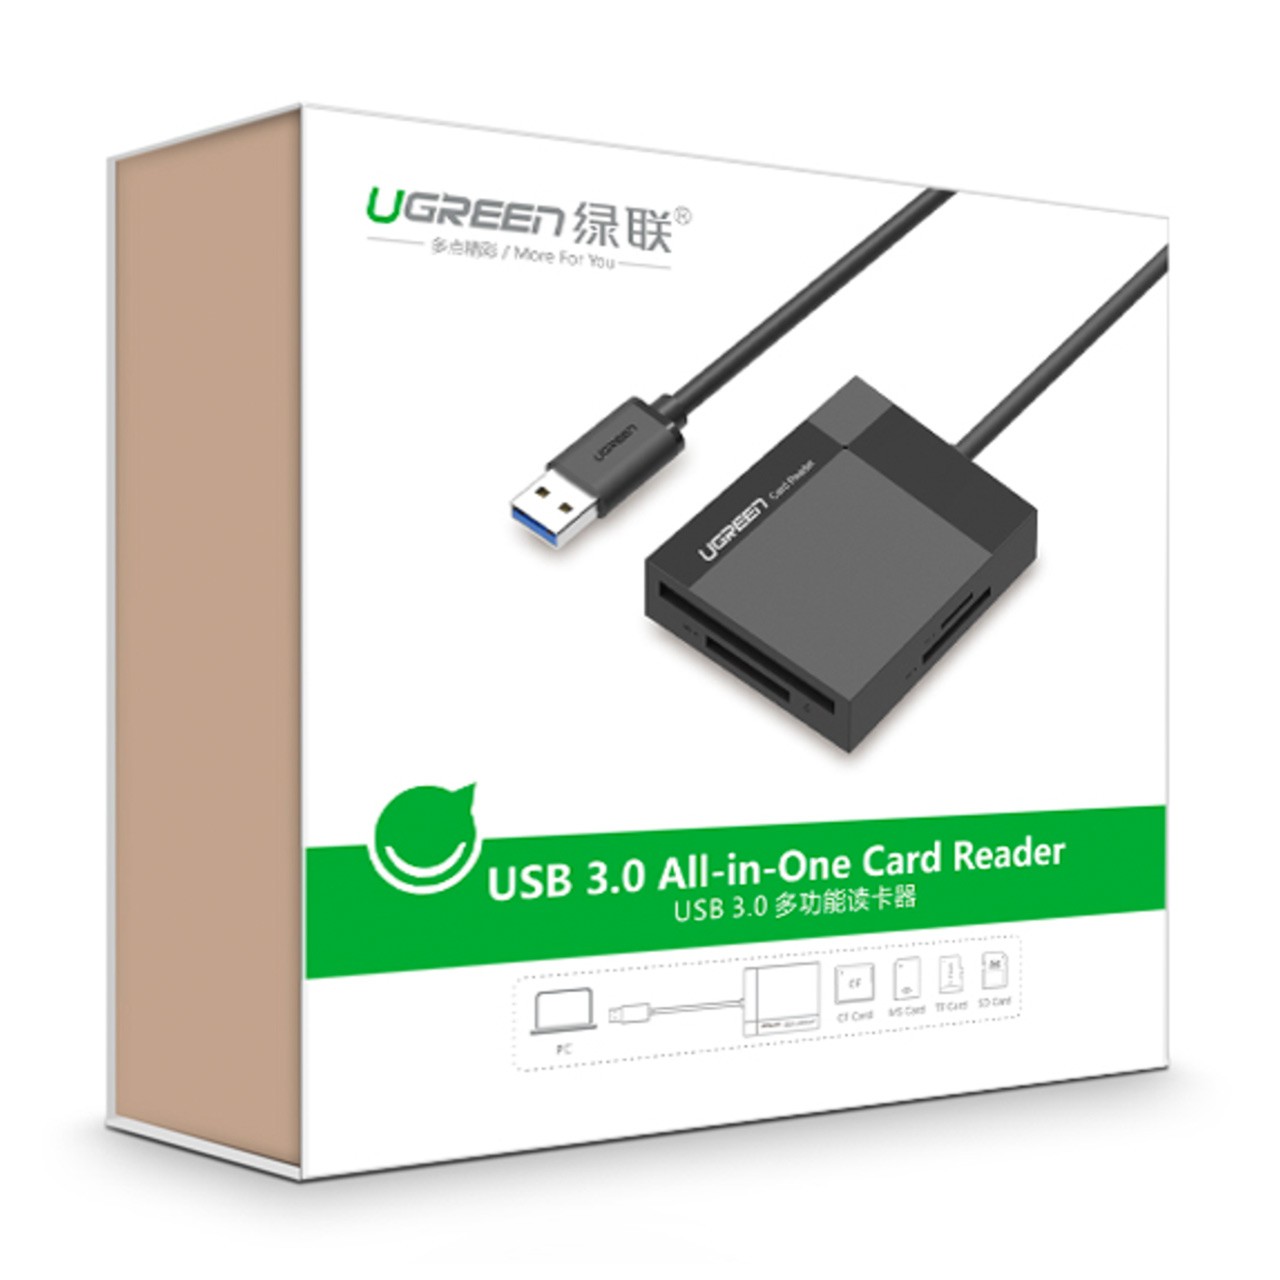 کارت خوان USB 3.0 برند Ugreen مدل 30231 با سرعت 5Gbps